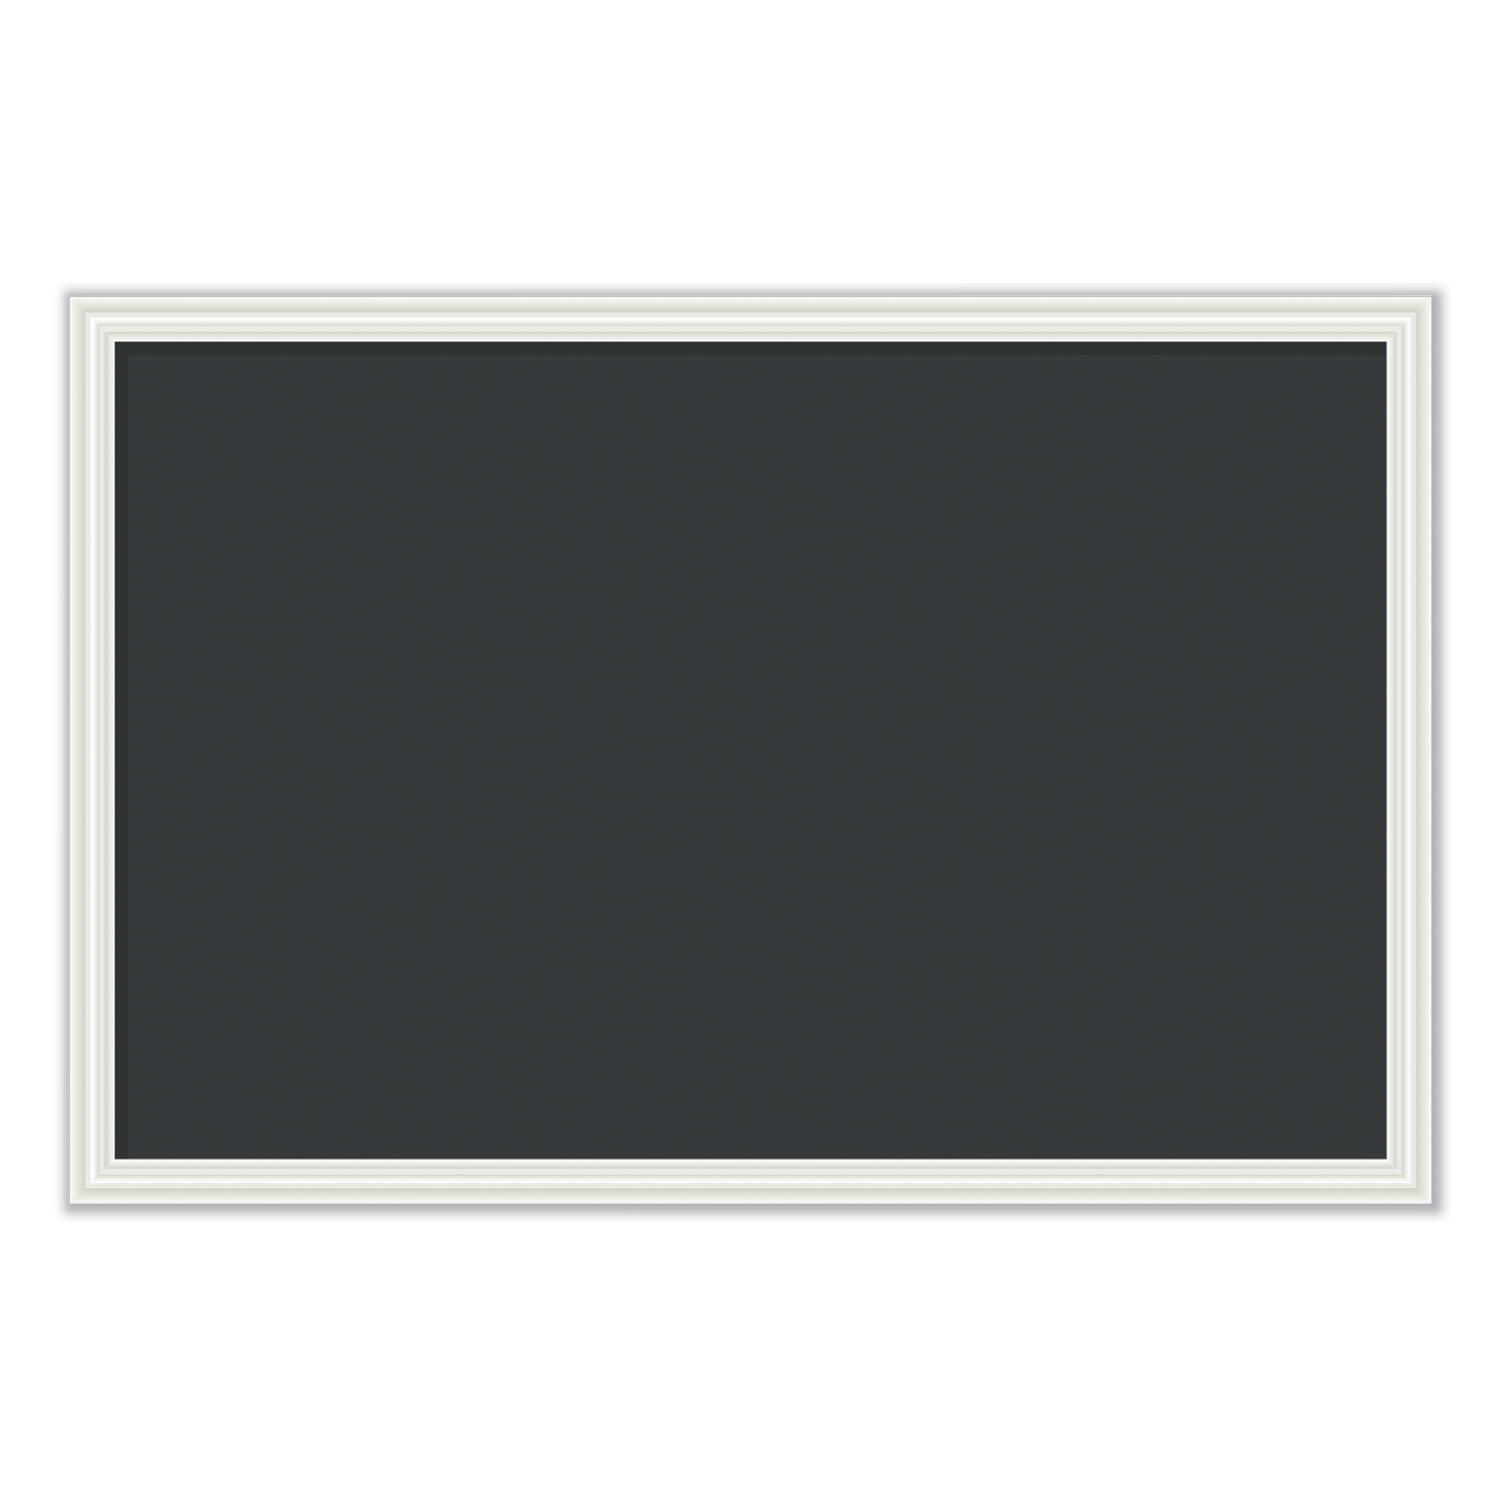  U Brands 2073U00-01 Magnetic Chalkboard with Decor Frame, 30 x 20, Black Surface/White Frame (UBR2073U0001) 